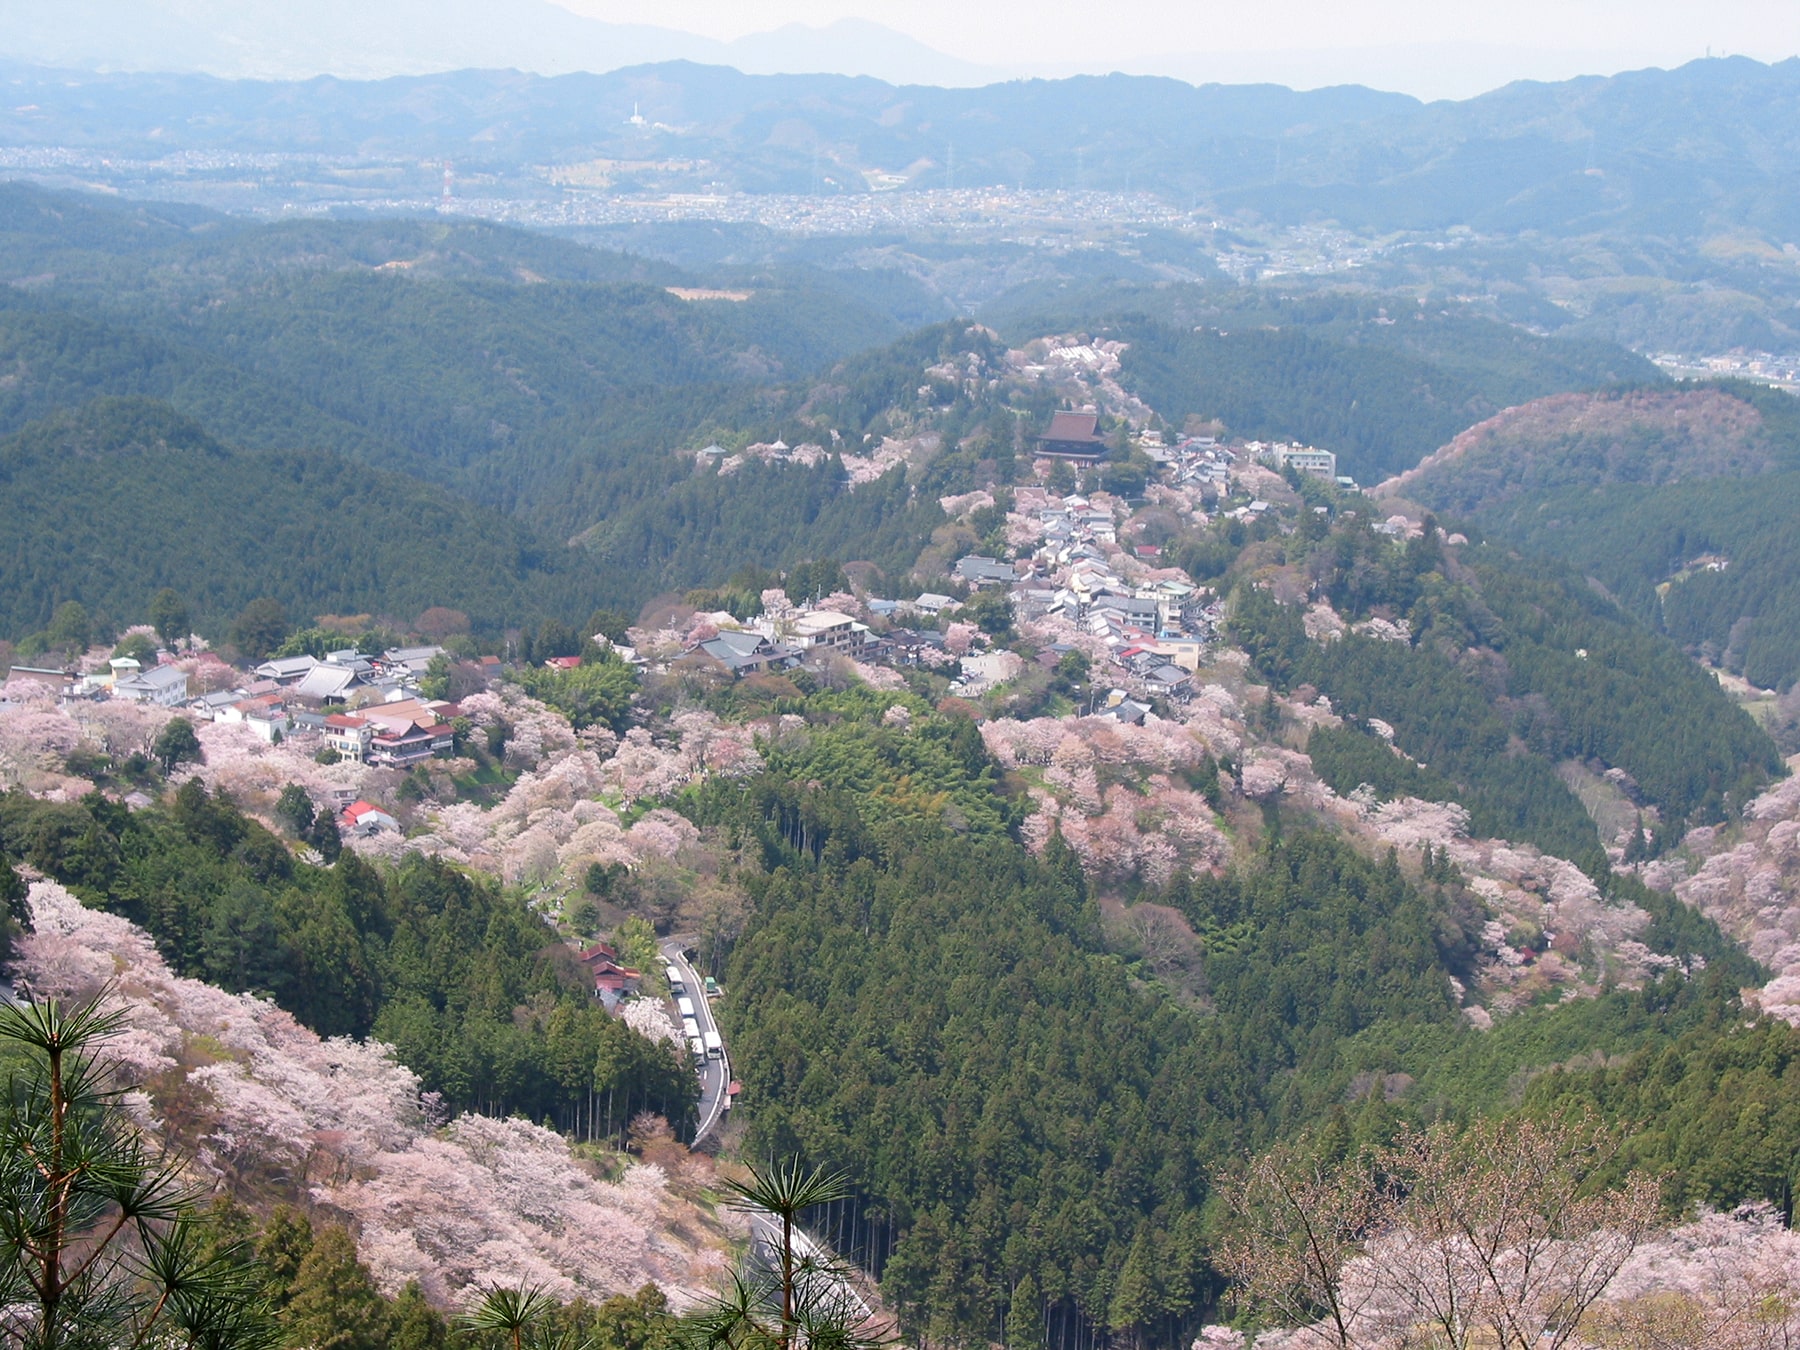 Mount Yoshino, Yoshino, Japan - Heroes Of Adventure